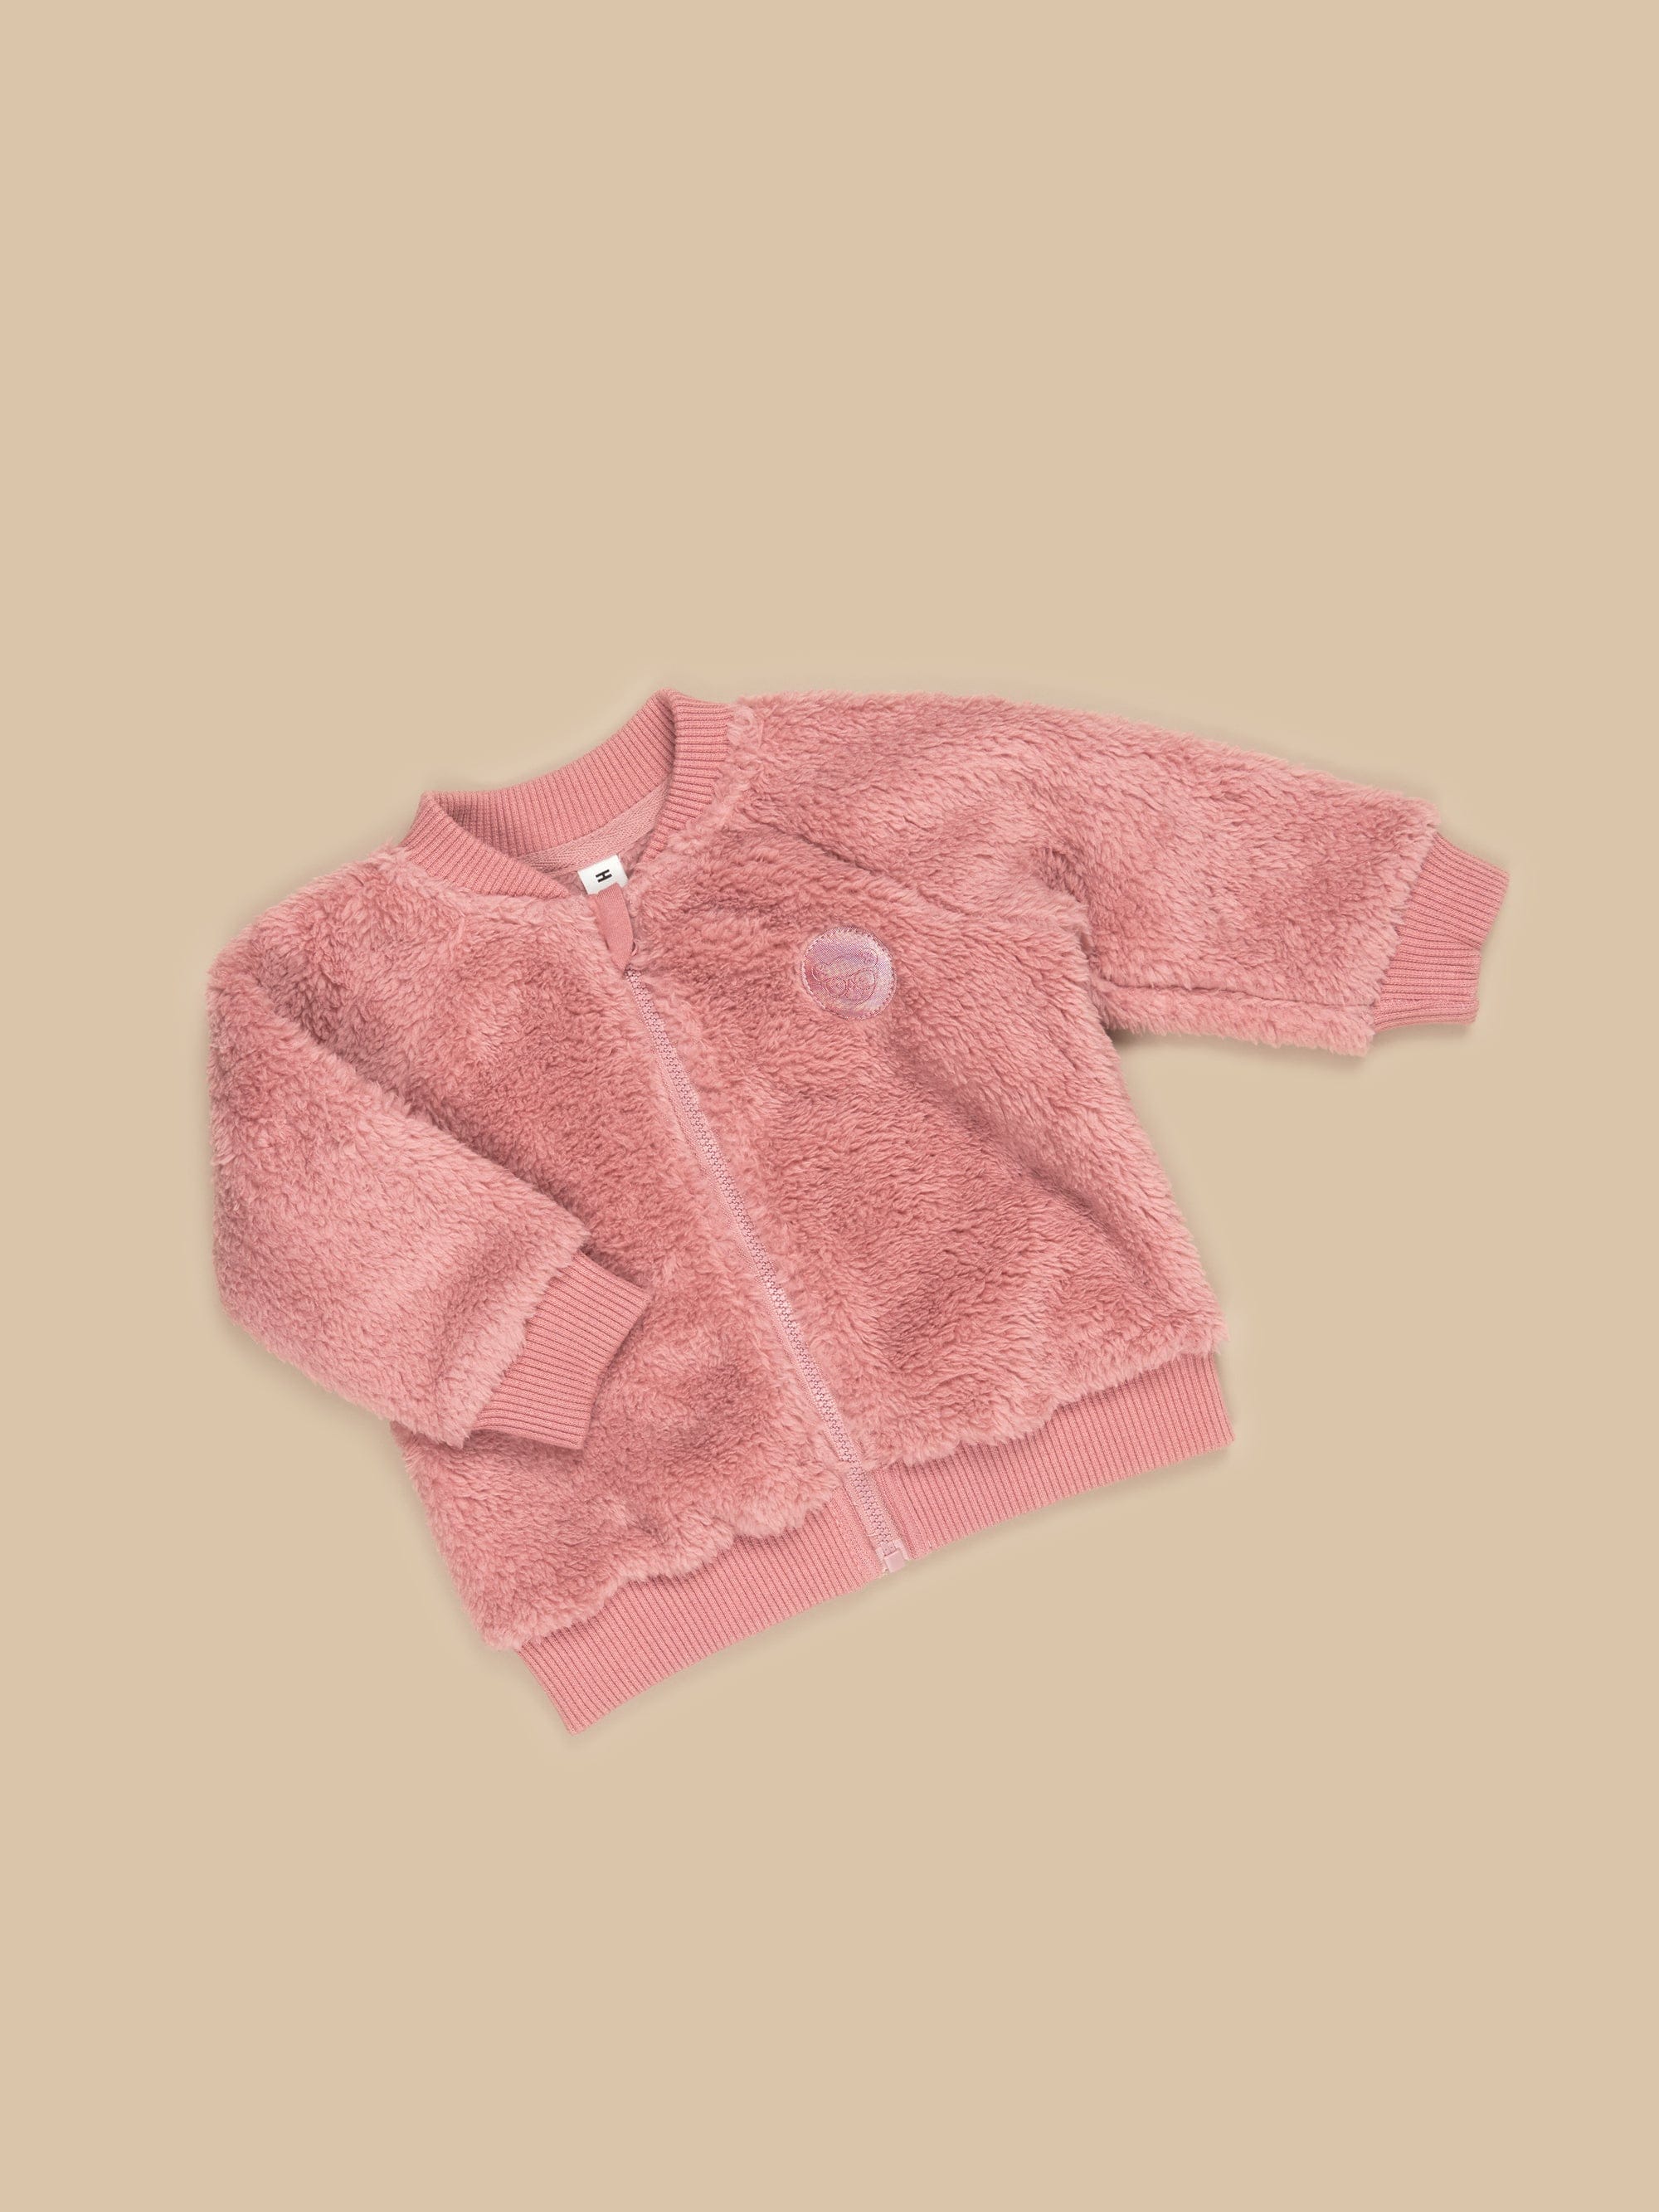 Rainbow Bear Fur Jacket - Dusty Rose - Twinkle Twinkle Little One